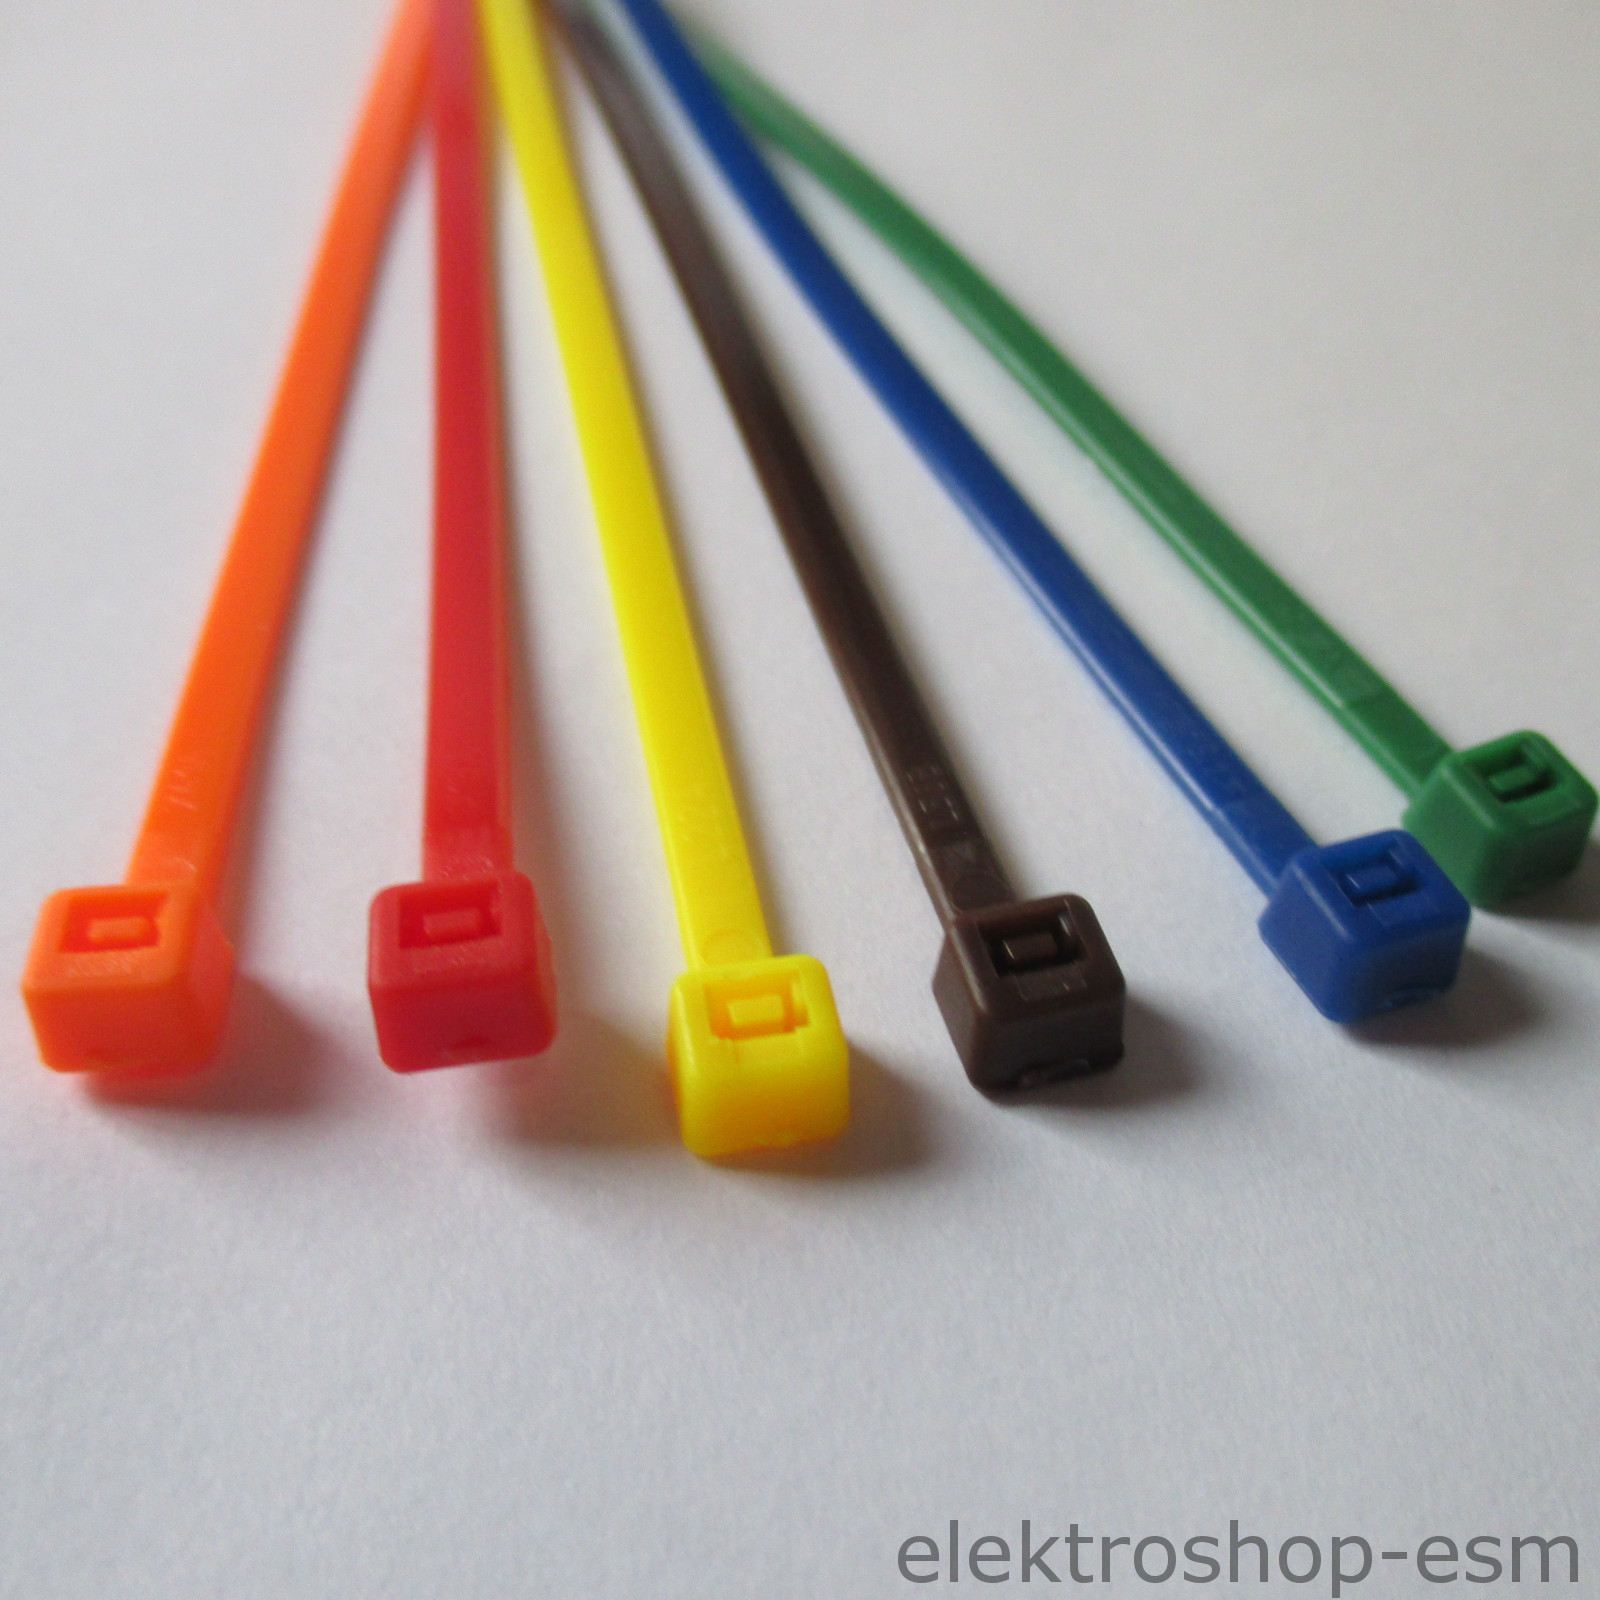 85 Profi Industrie Kabelbinder Sortiment farbig Set cable ties weiß schwarz bunt 